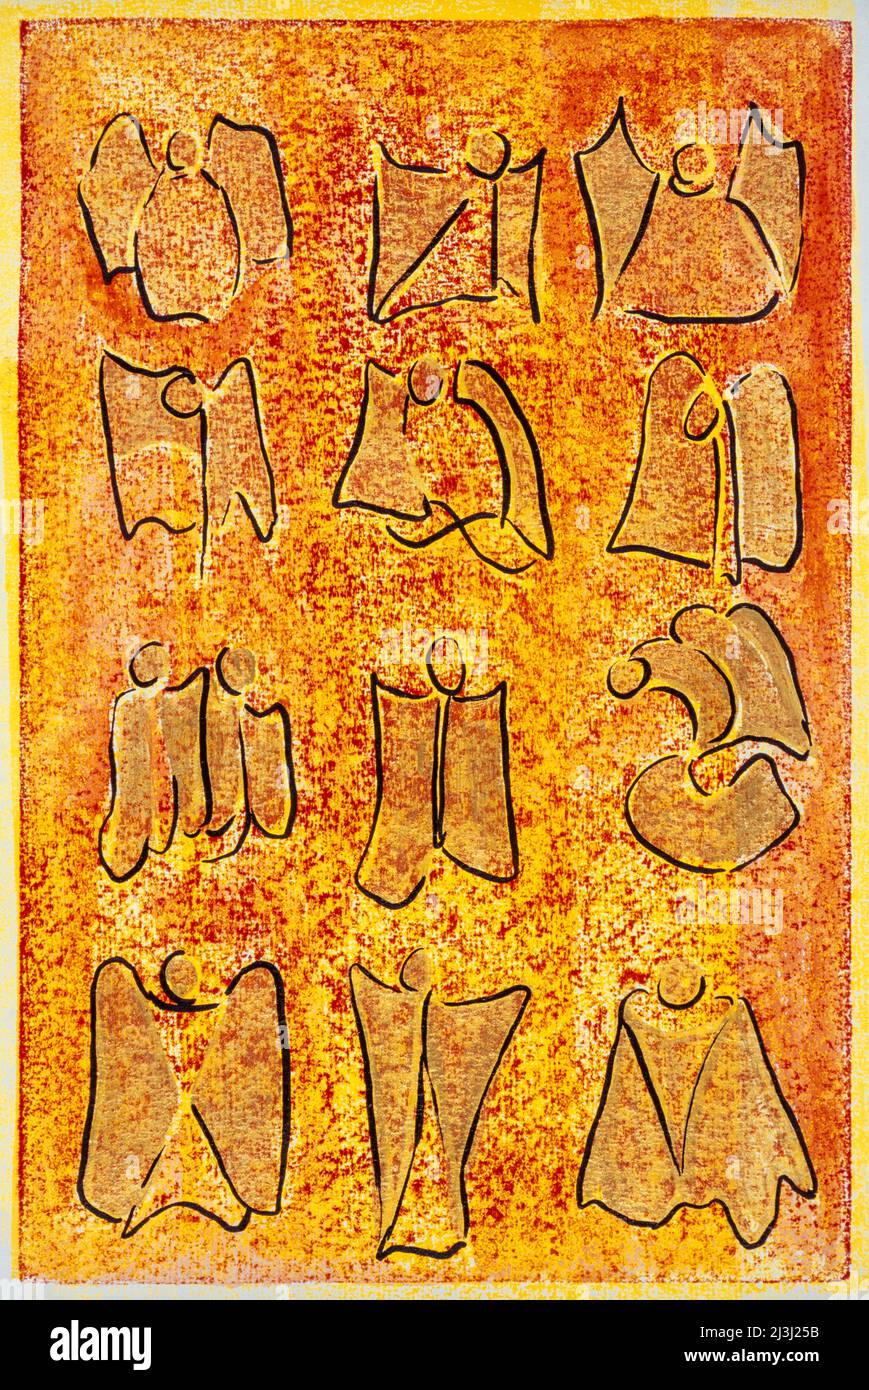 Imprimé par Gisela Oberst douze anges, abstrait, orange, jaune, figure angélique, représentation angélique, ailé, mystique, êtres célestes Banque D'Images